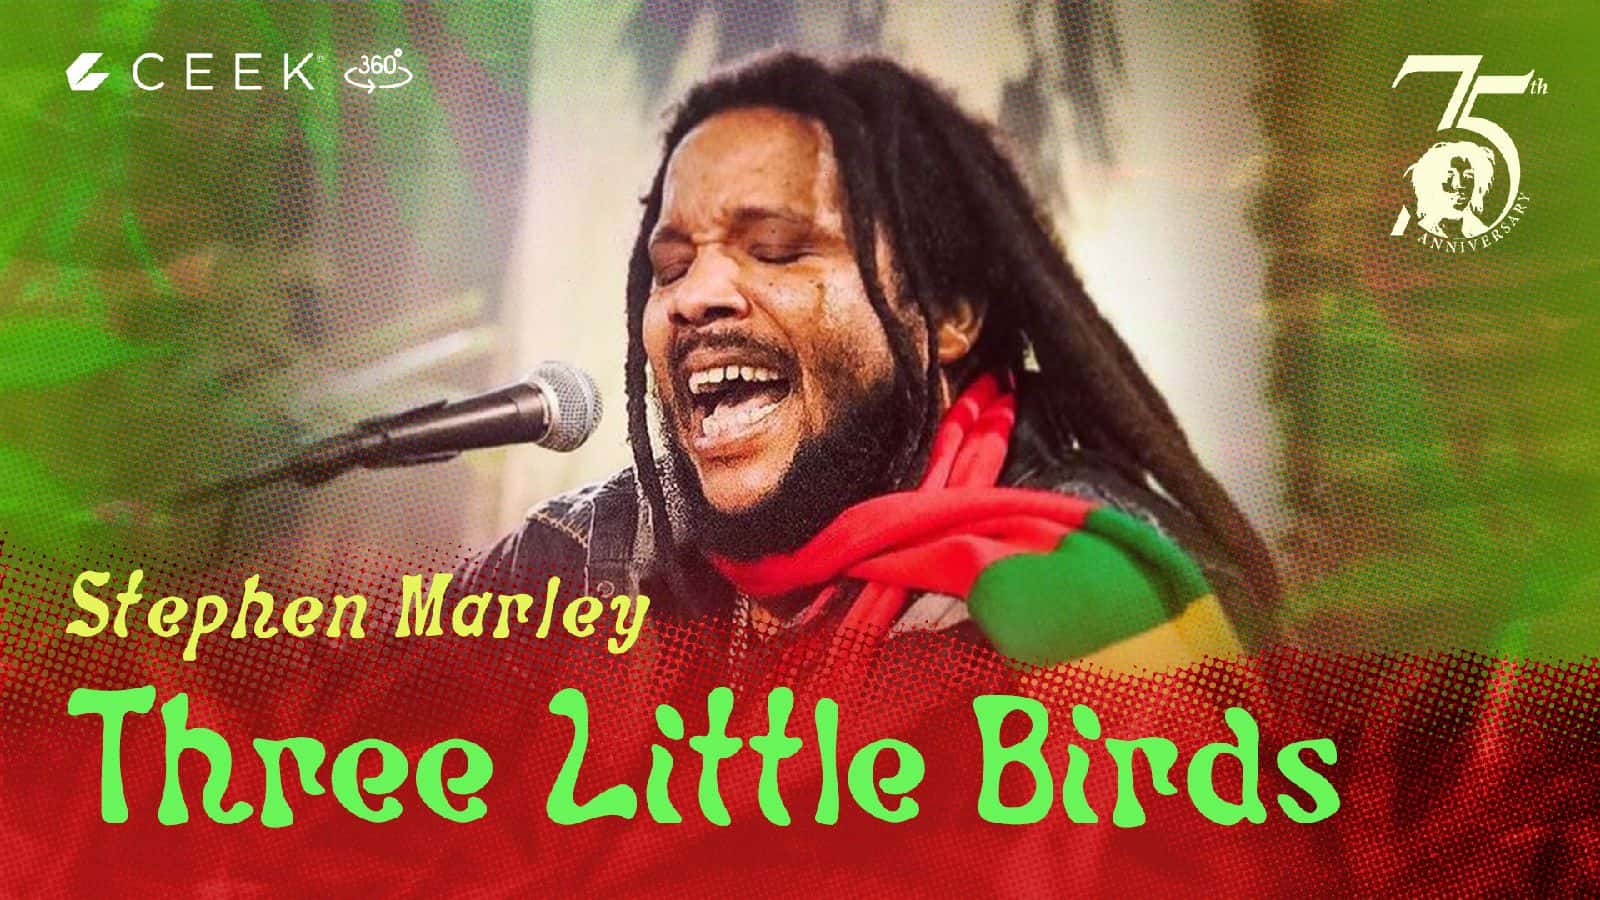 Stephen Marley 360 Three Little Birds